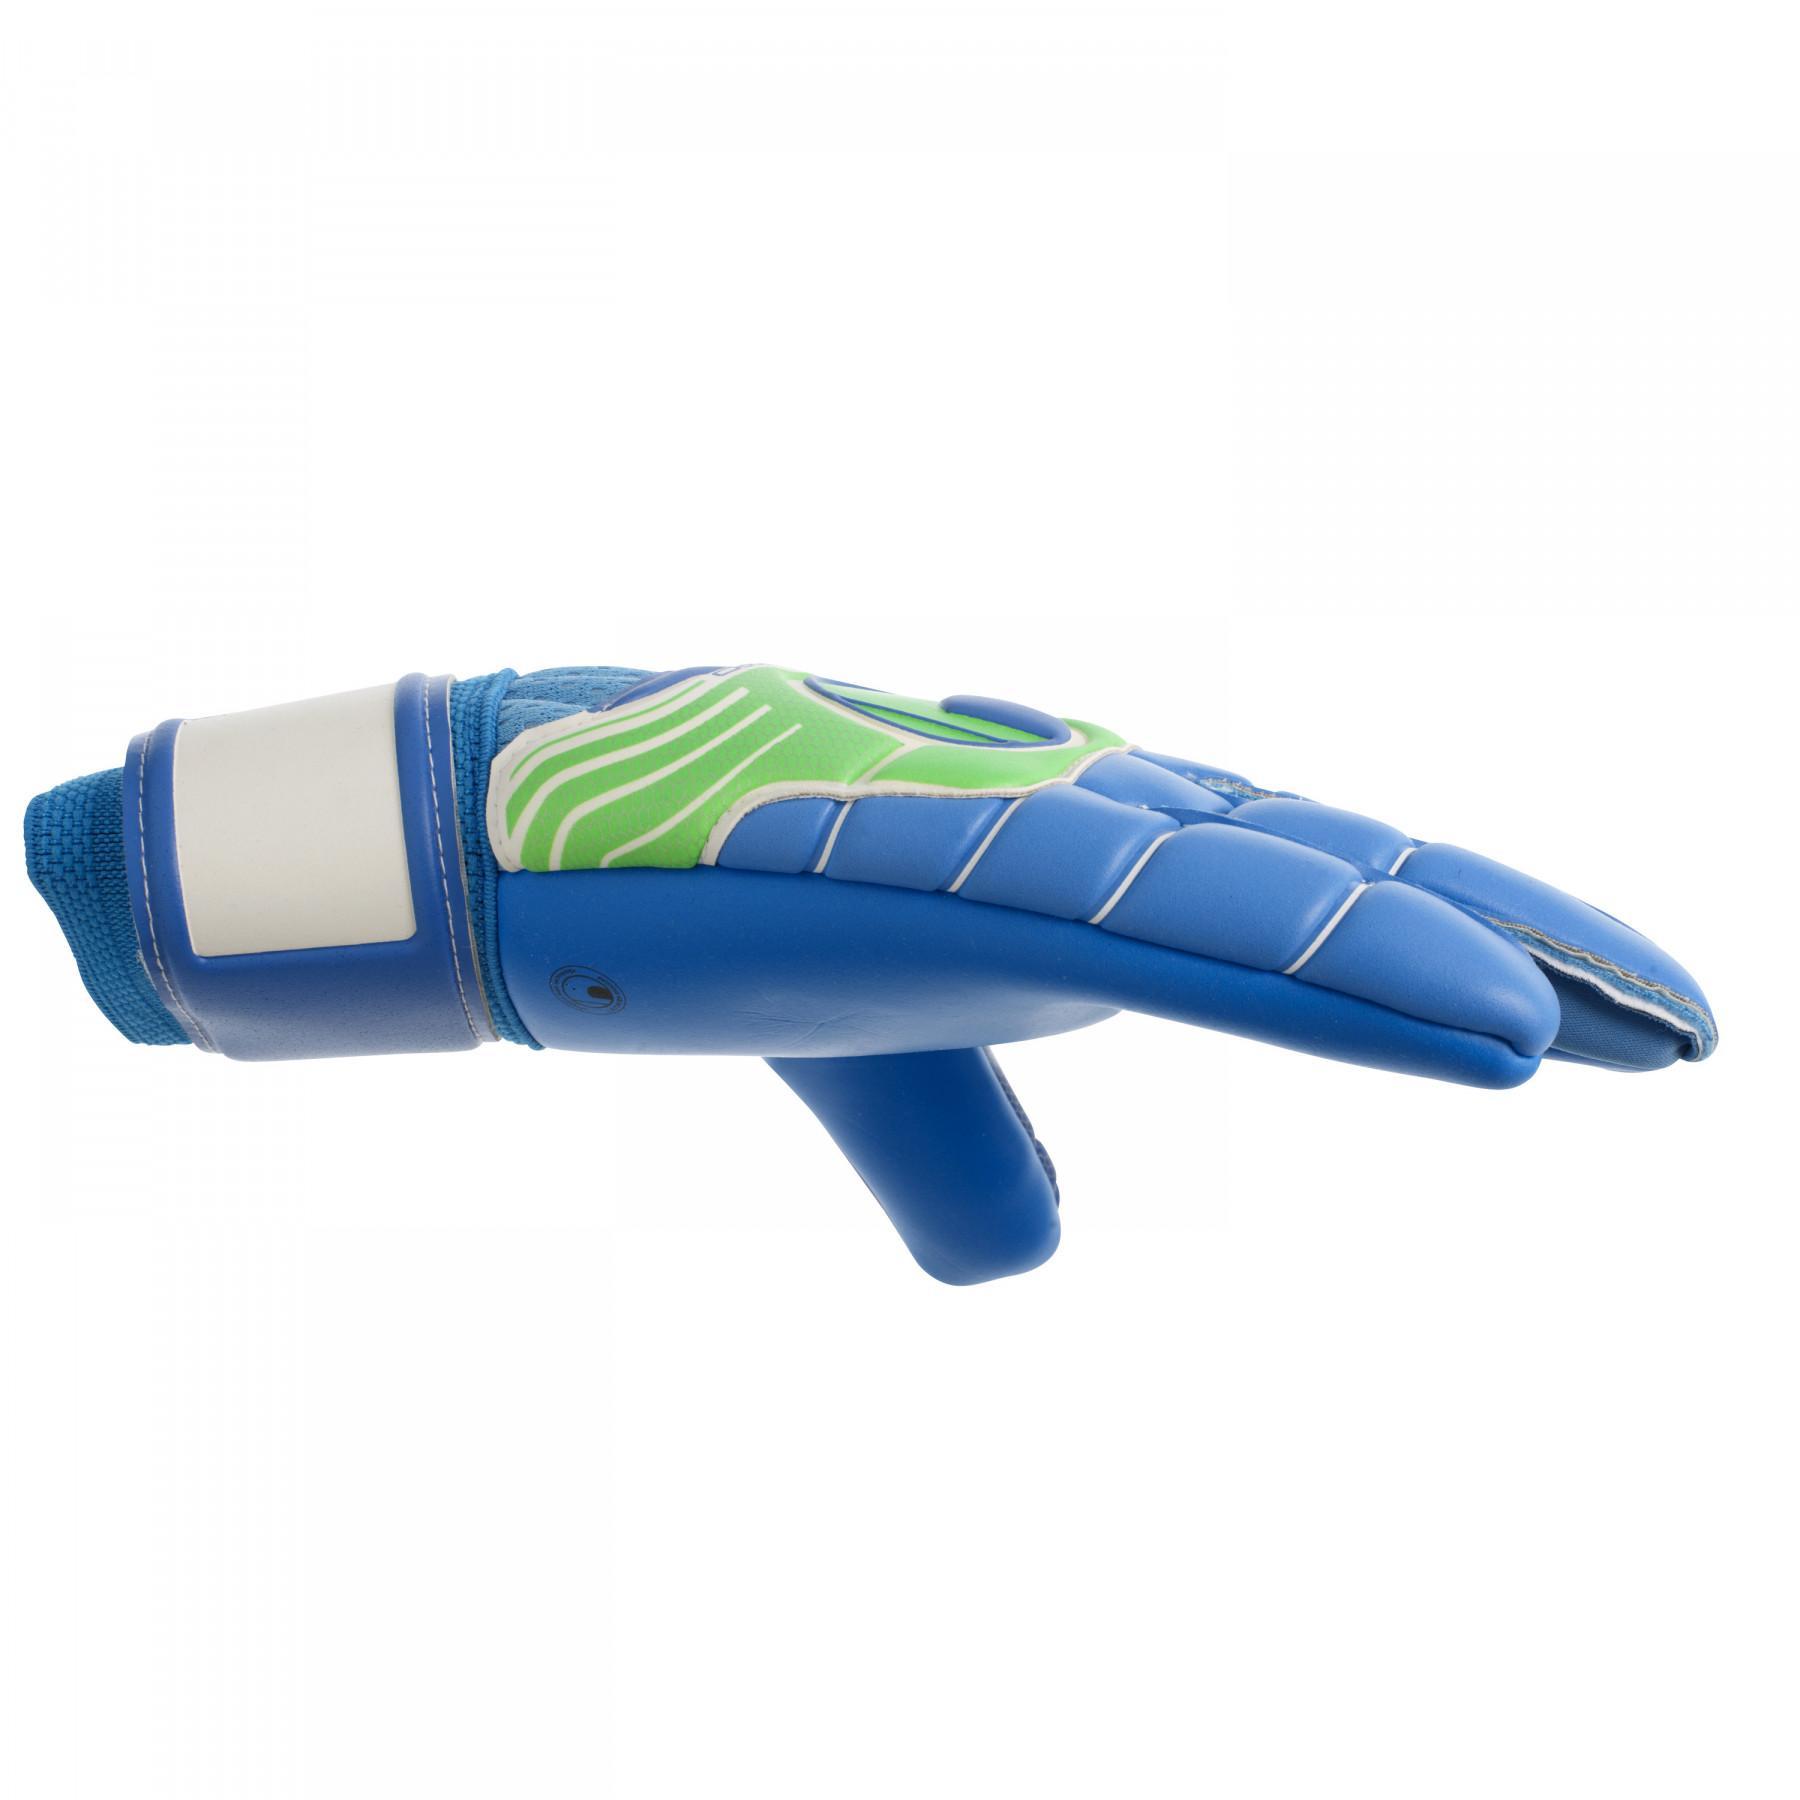 Målvaktshandskar Uhlsport Fangmaschine Aquasoft HN Windbreaker bleu/vert fluo